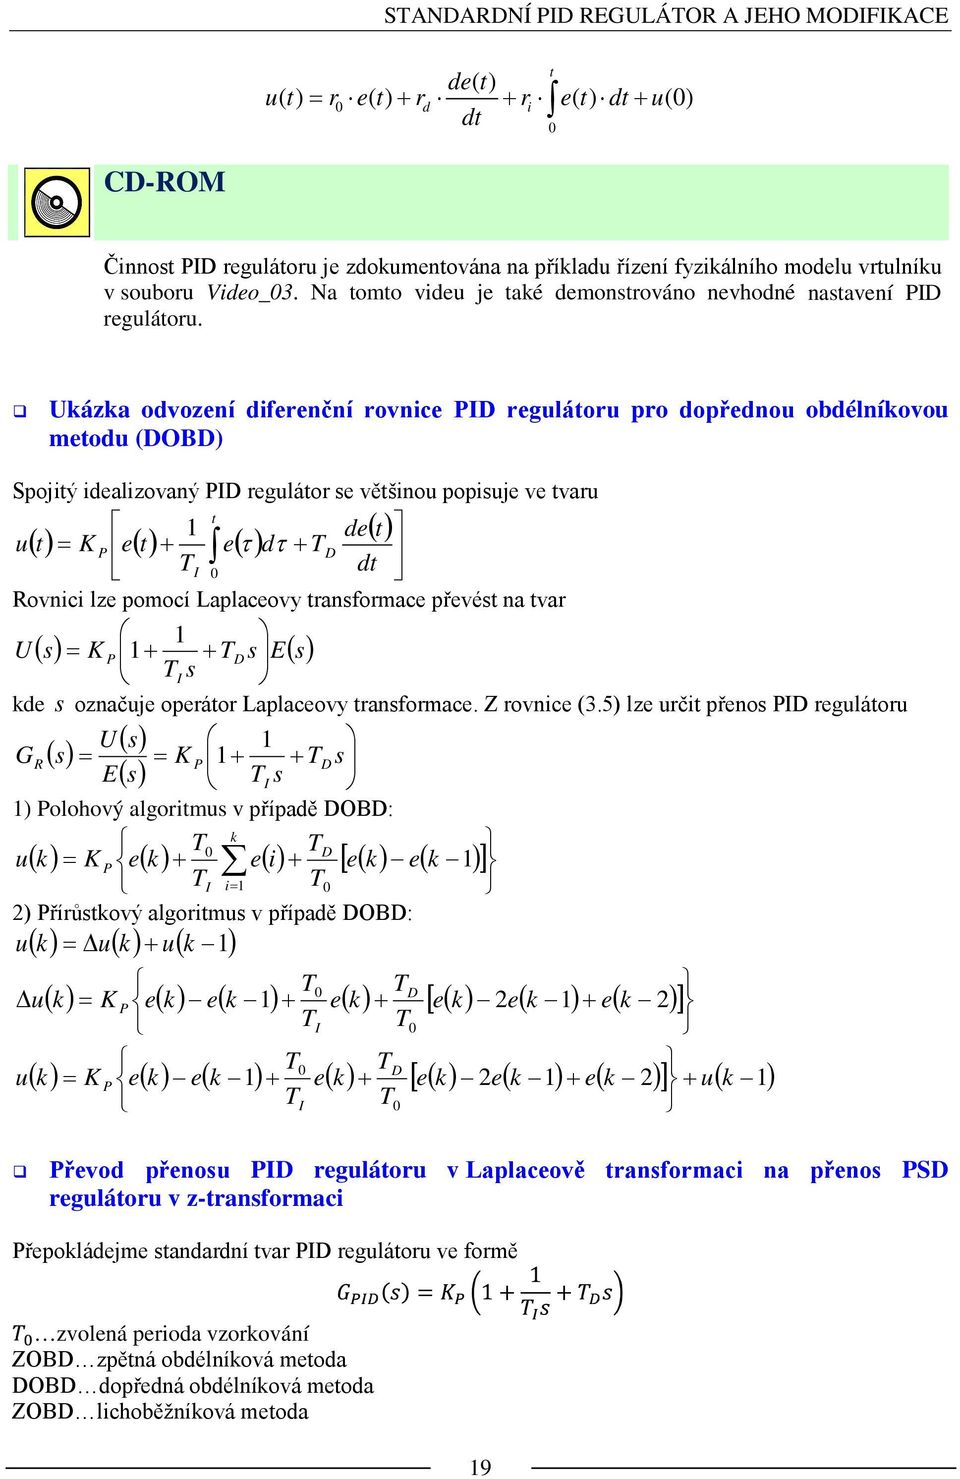 Uáza odvození diferenční rovnice PID regulátoru pro dopřednou obdélníovou metodu (DOBD) Spojitý idealizovaný PID regulátor se většinou popisuje ve tvaru ( ) ( ) ( ) ( ) + + = t D I P dt t de d e t e